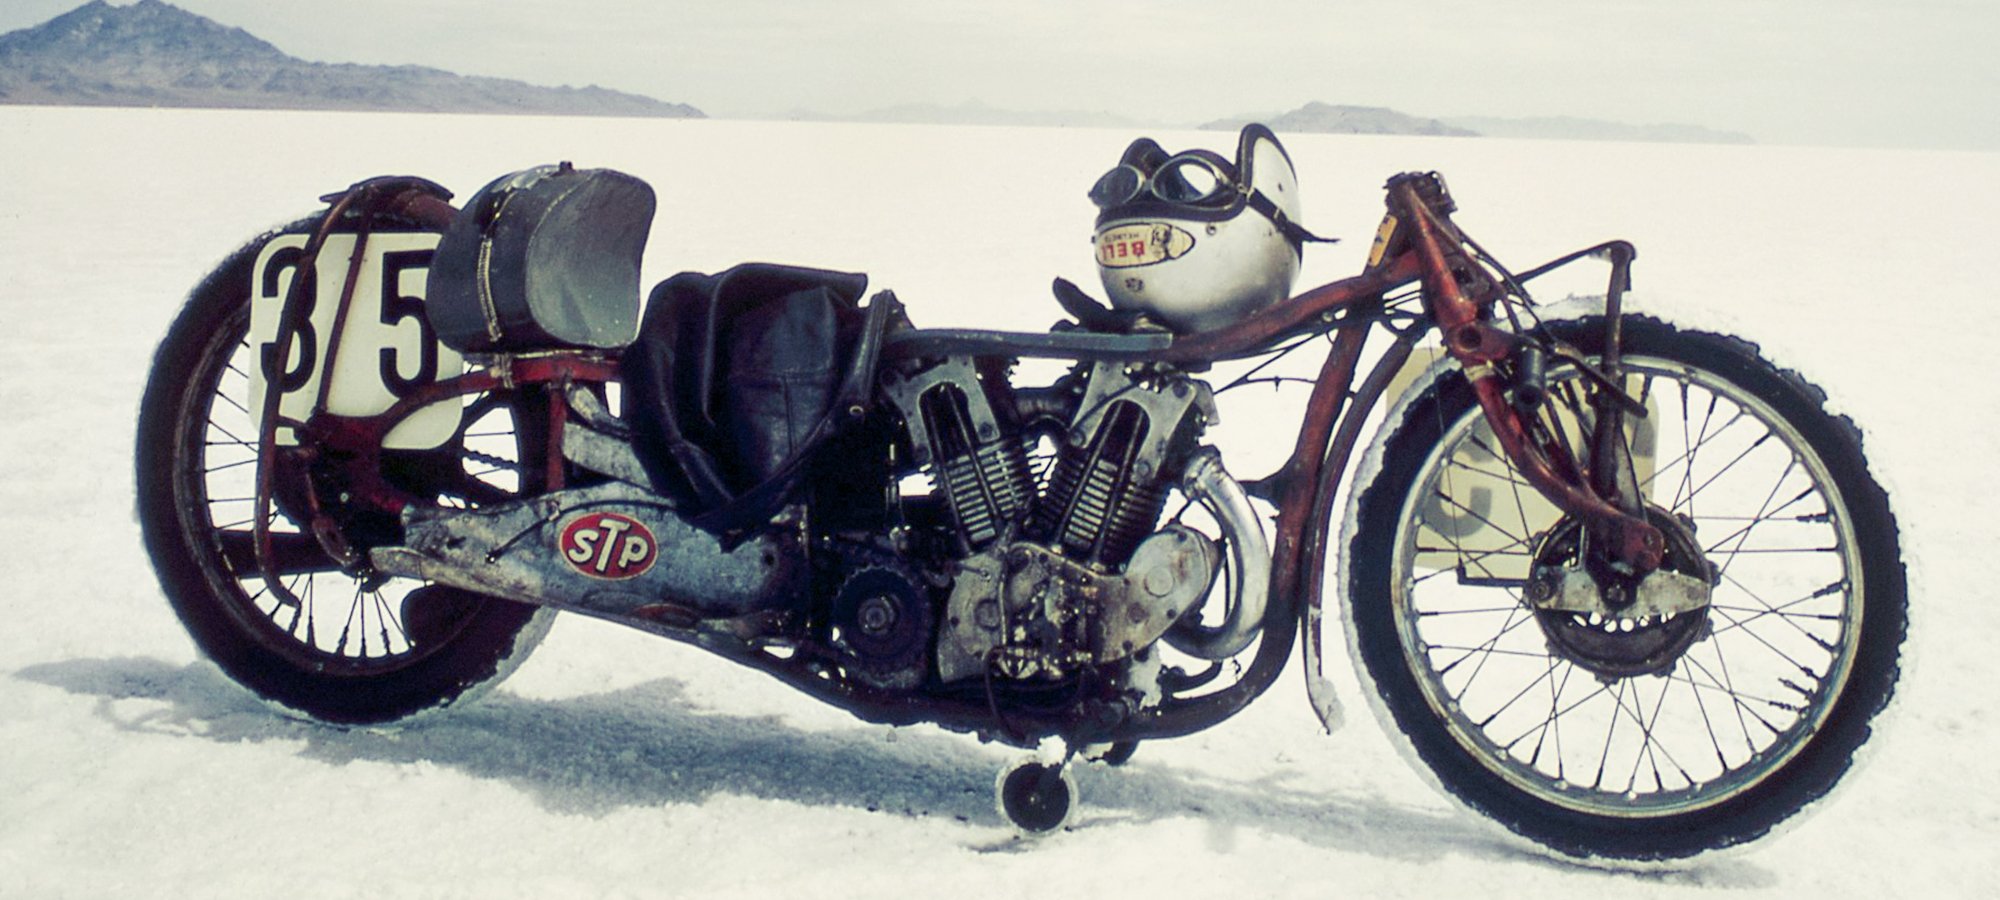 Burt Munro's vintage motorcycle - speed and ingenuity